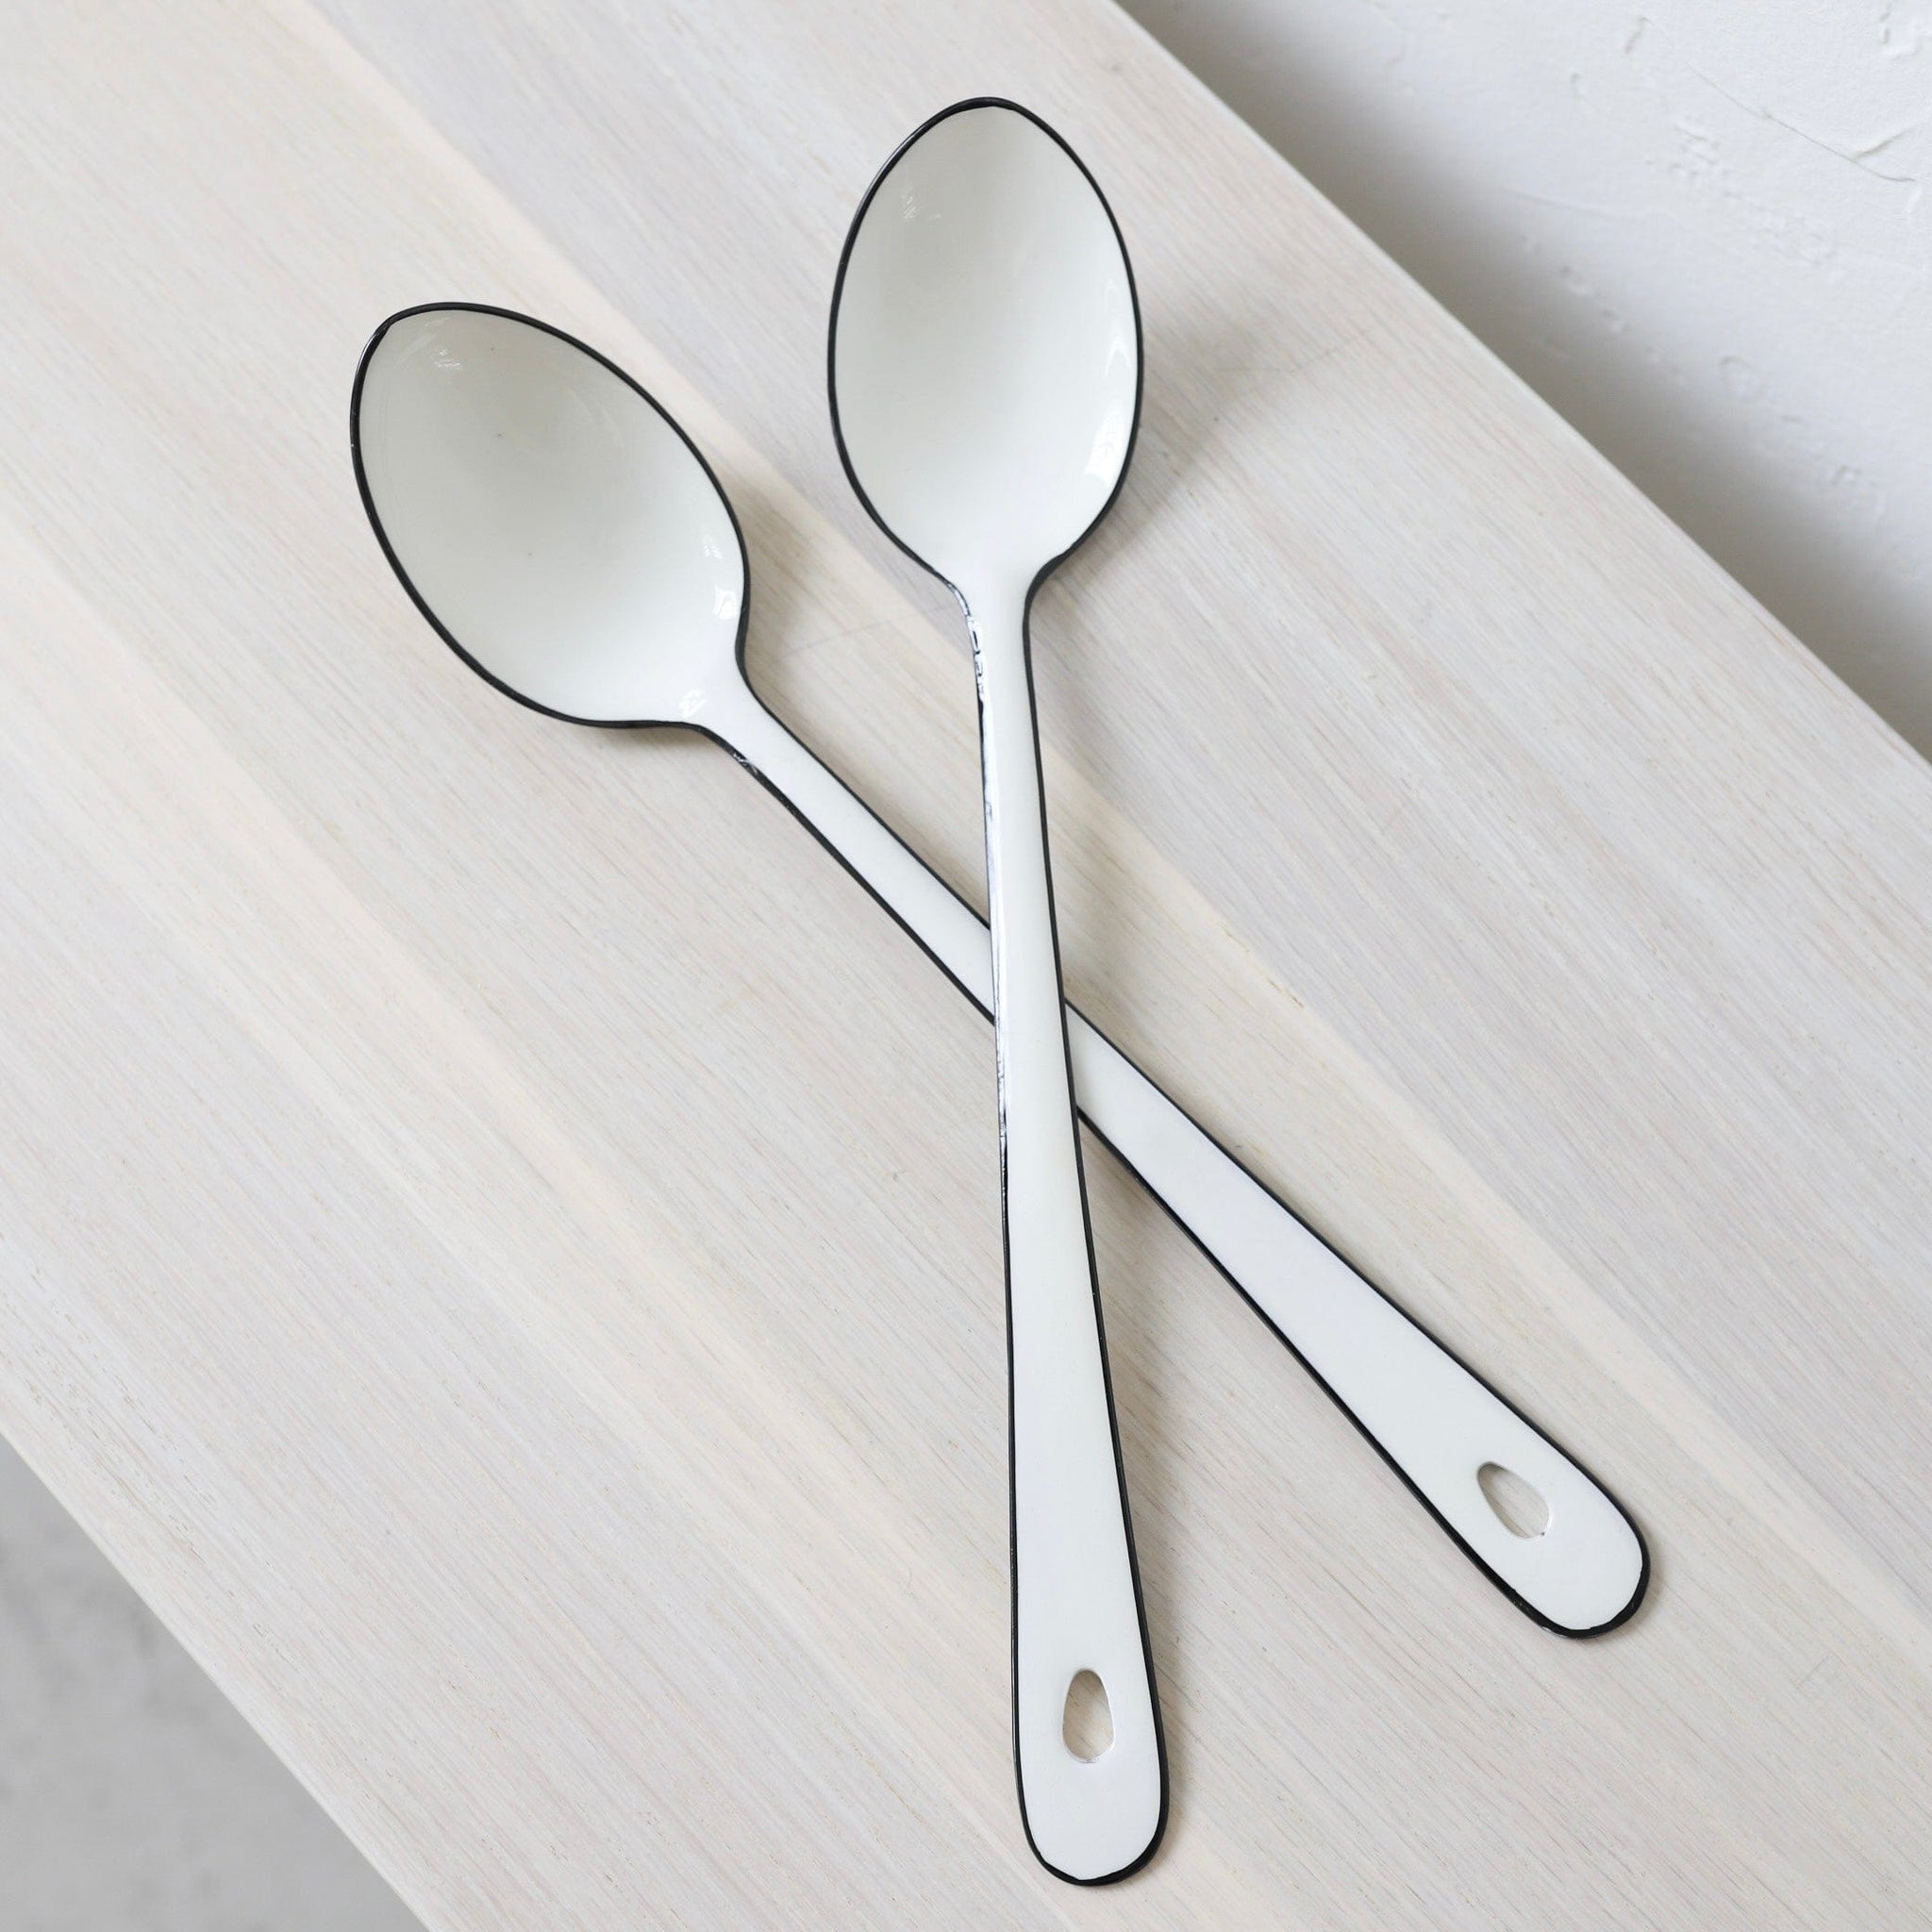 Enamel Measuring Spoons